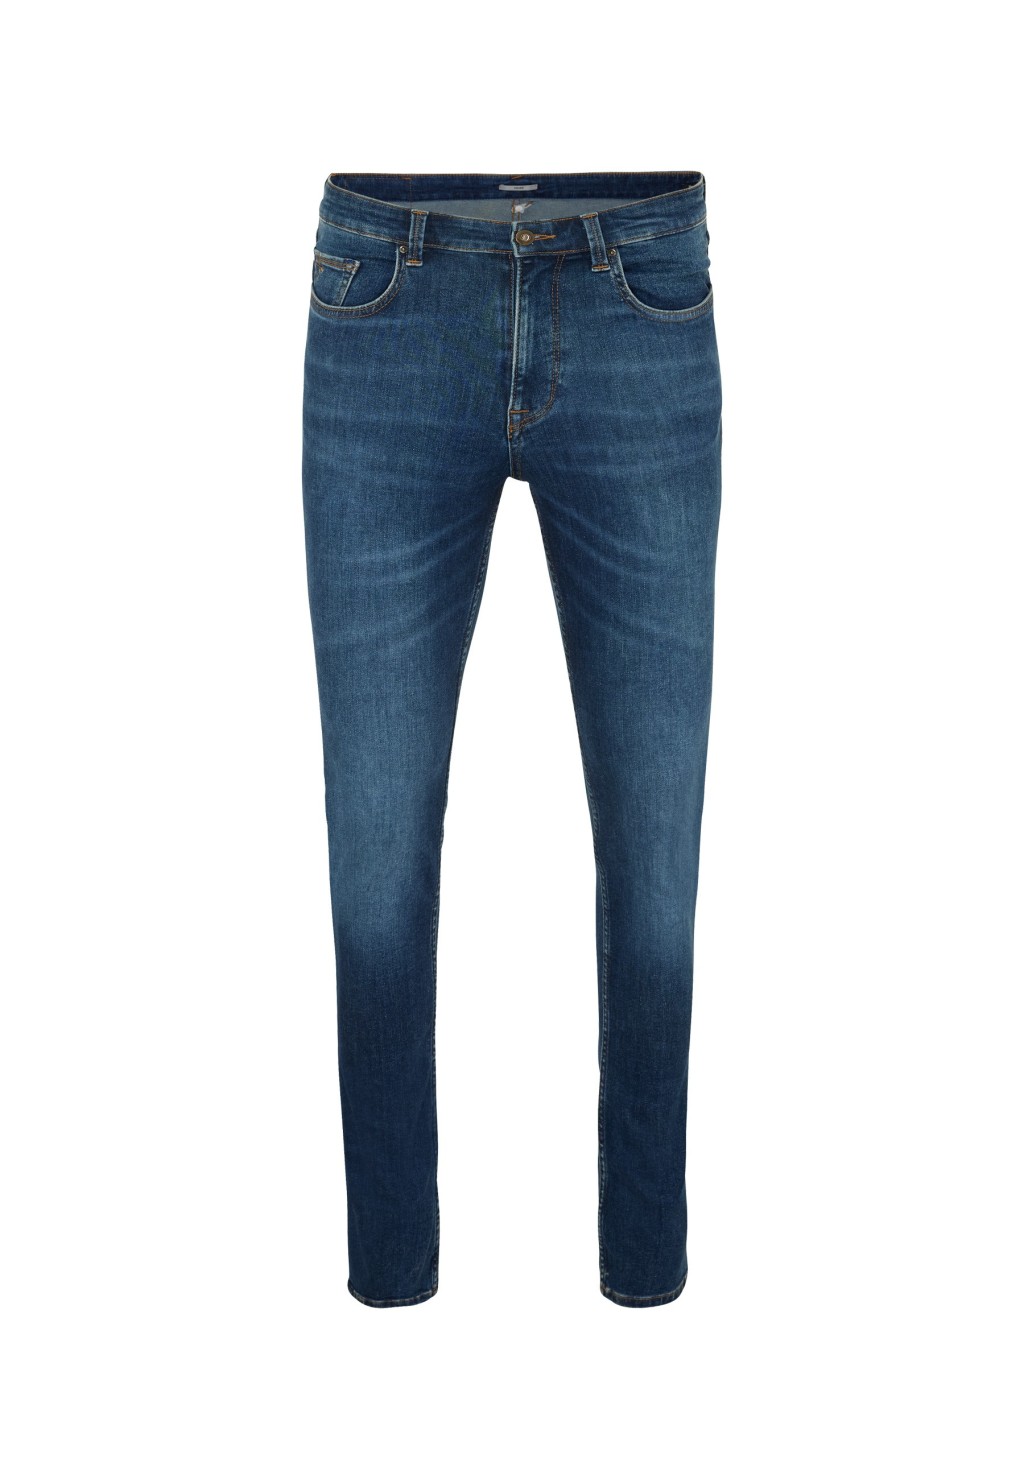 Джинсы Mexx для мужчин, BM0516033M, размер 31-32, Dark Vintage, джинсы, синий, хлопок; эластан; полиэстер  - купить